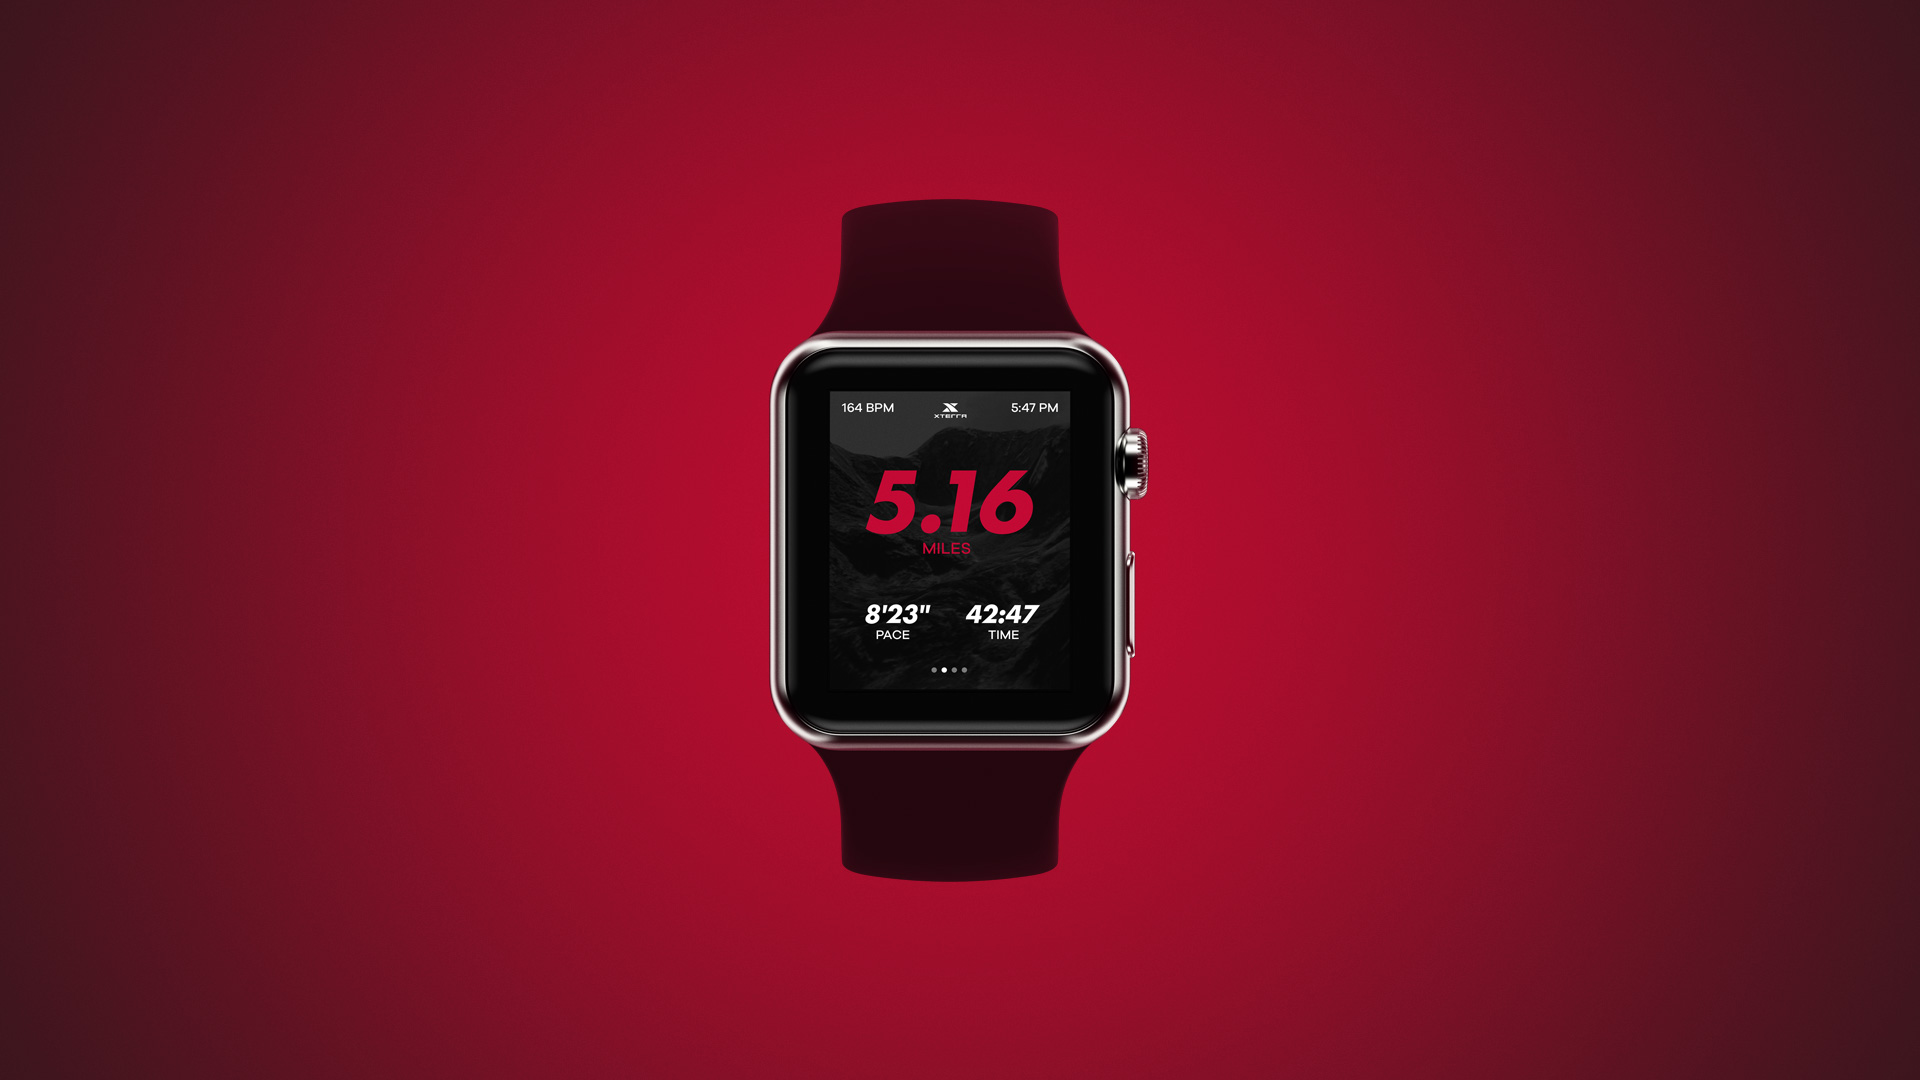 XTERRA - Apple Watch Running App 8bit